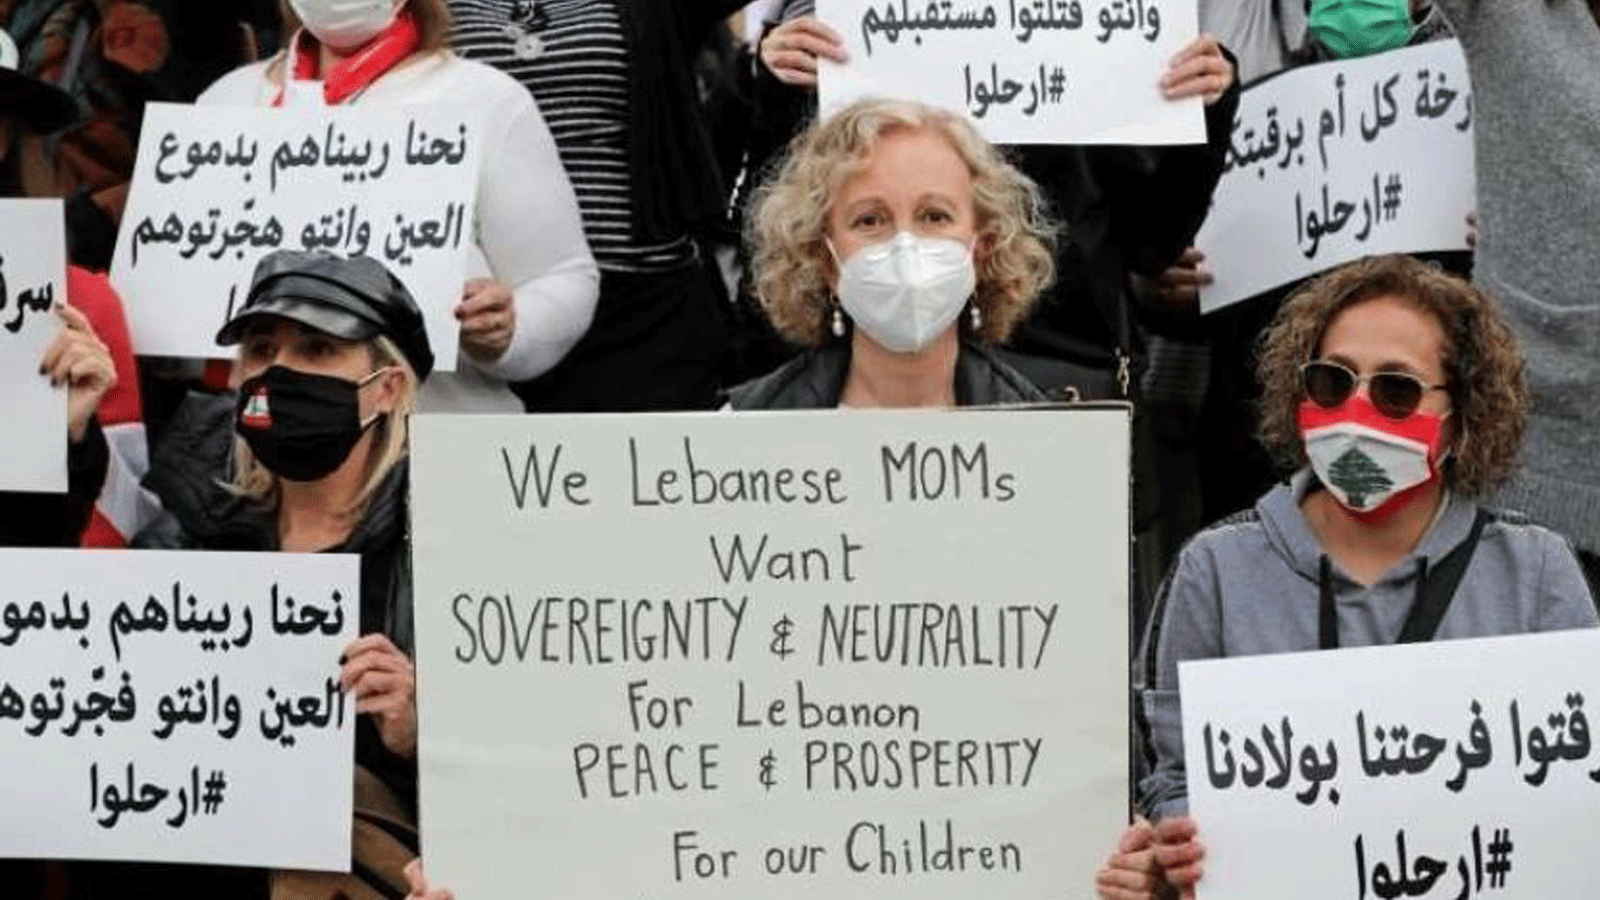 نساء لبنانيات يحملن لافتات أثناء احتجاجهن على الشلل السياسي الذي تعاني منه البلاد والأزمة الاقتصادية العميقة في بيروت عشية عيد الأم في البلاد.